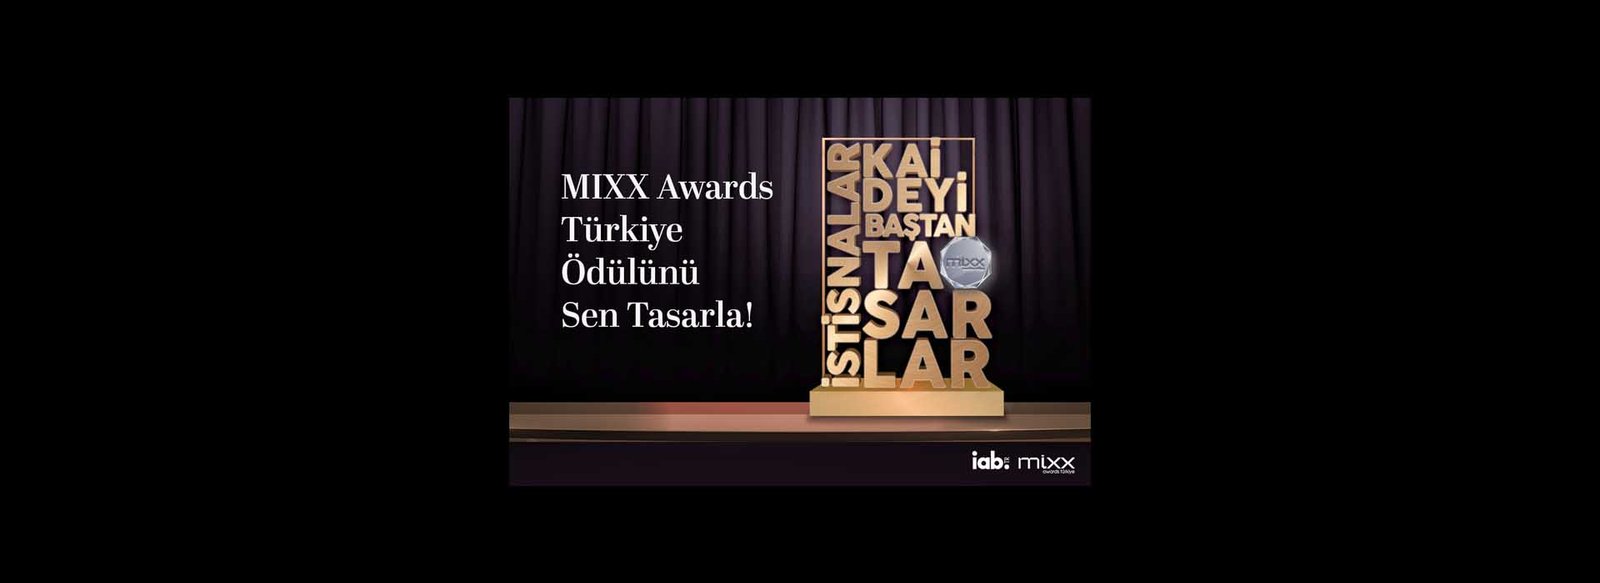 Ödül Tasarım Yarışması - IAB, MIXX AWARDS TÜRKİYE (1)